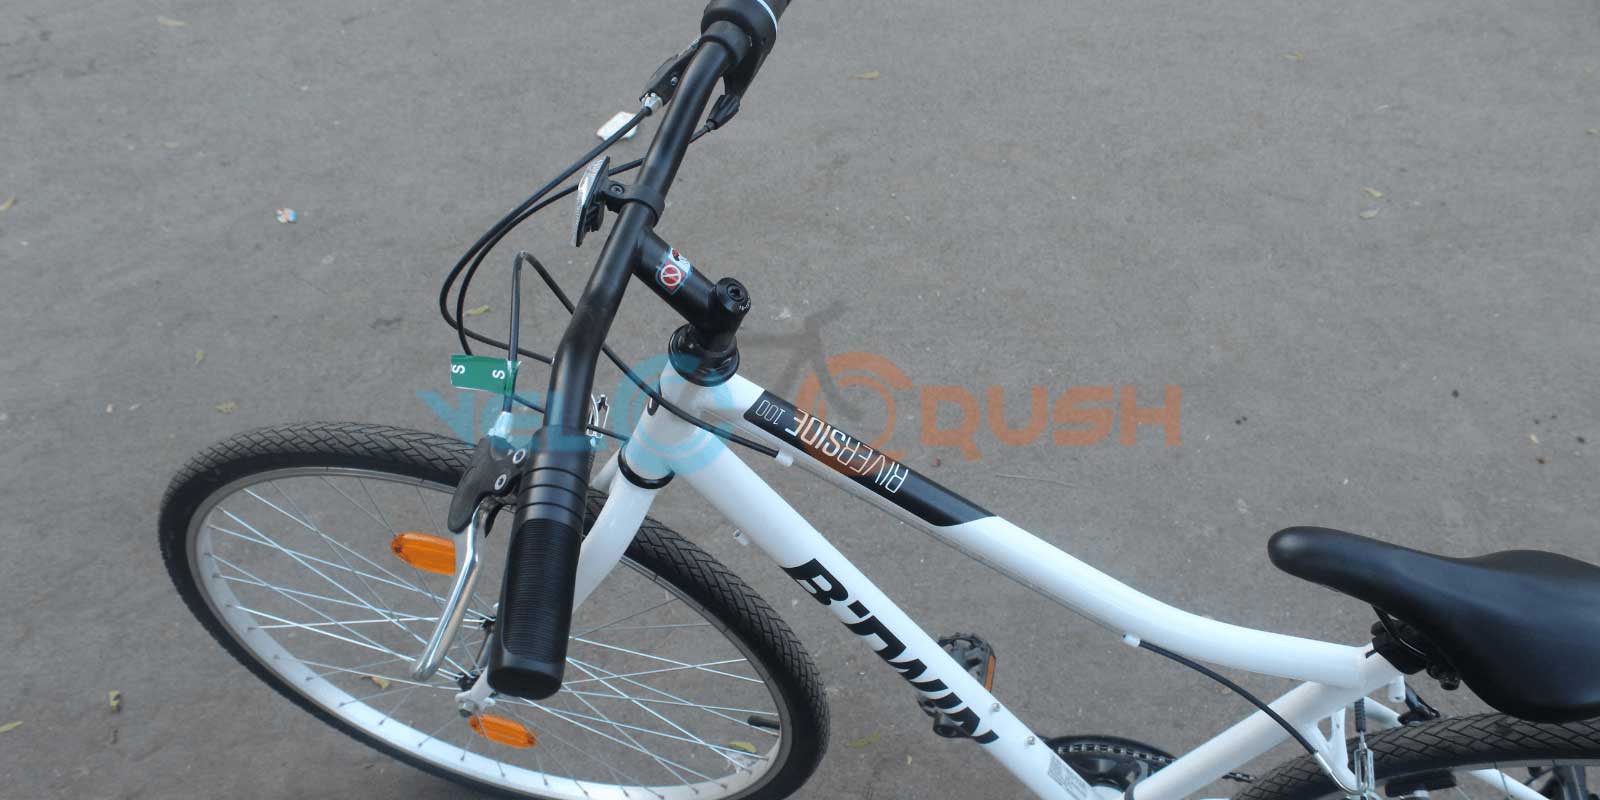 decathlon btwin hybrid bike